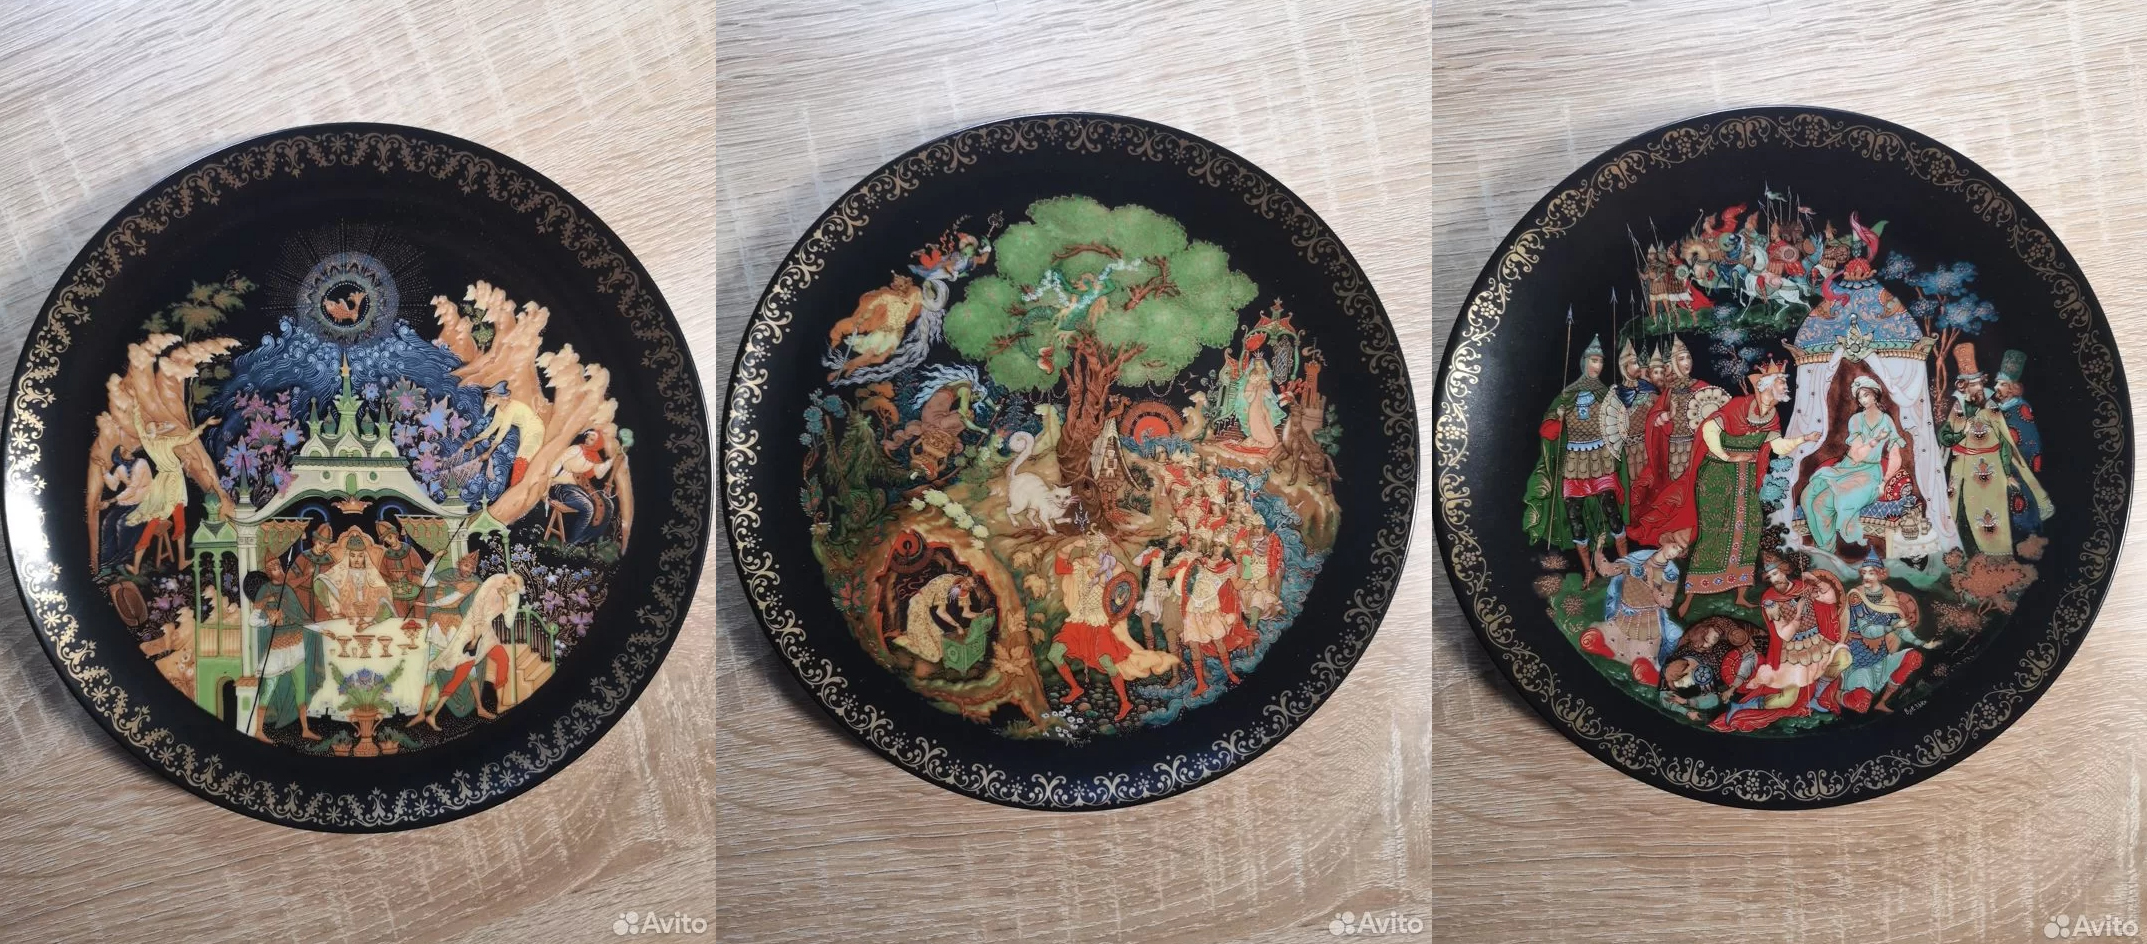 Декоративные настенные фарфоровые тарелки палех, серия "Русские сказки". Фото © "Авито"